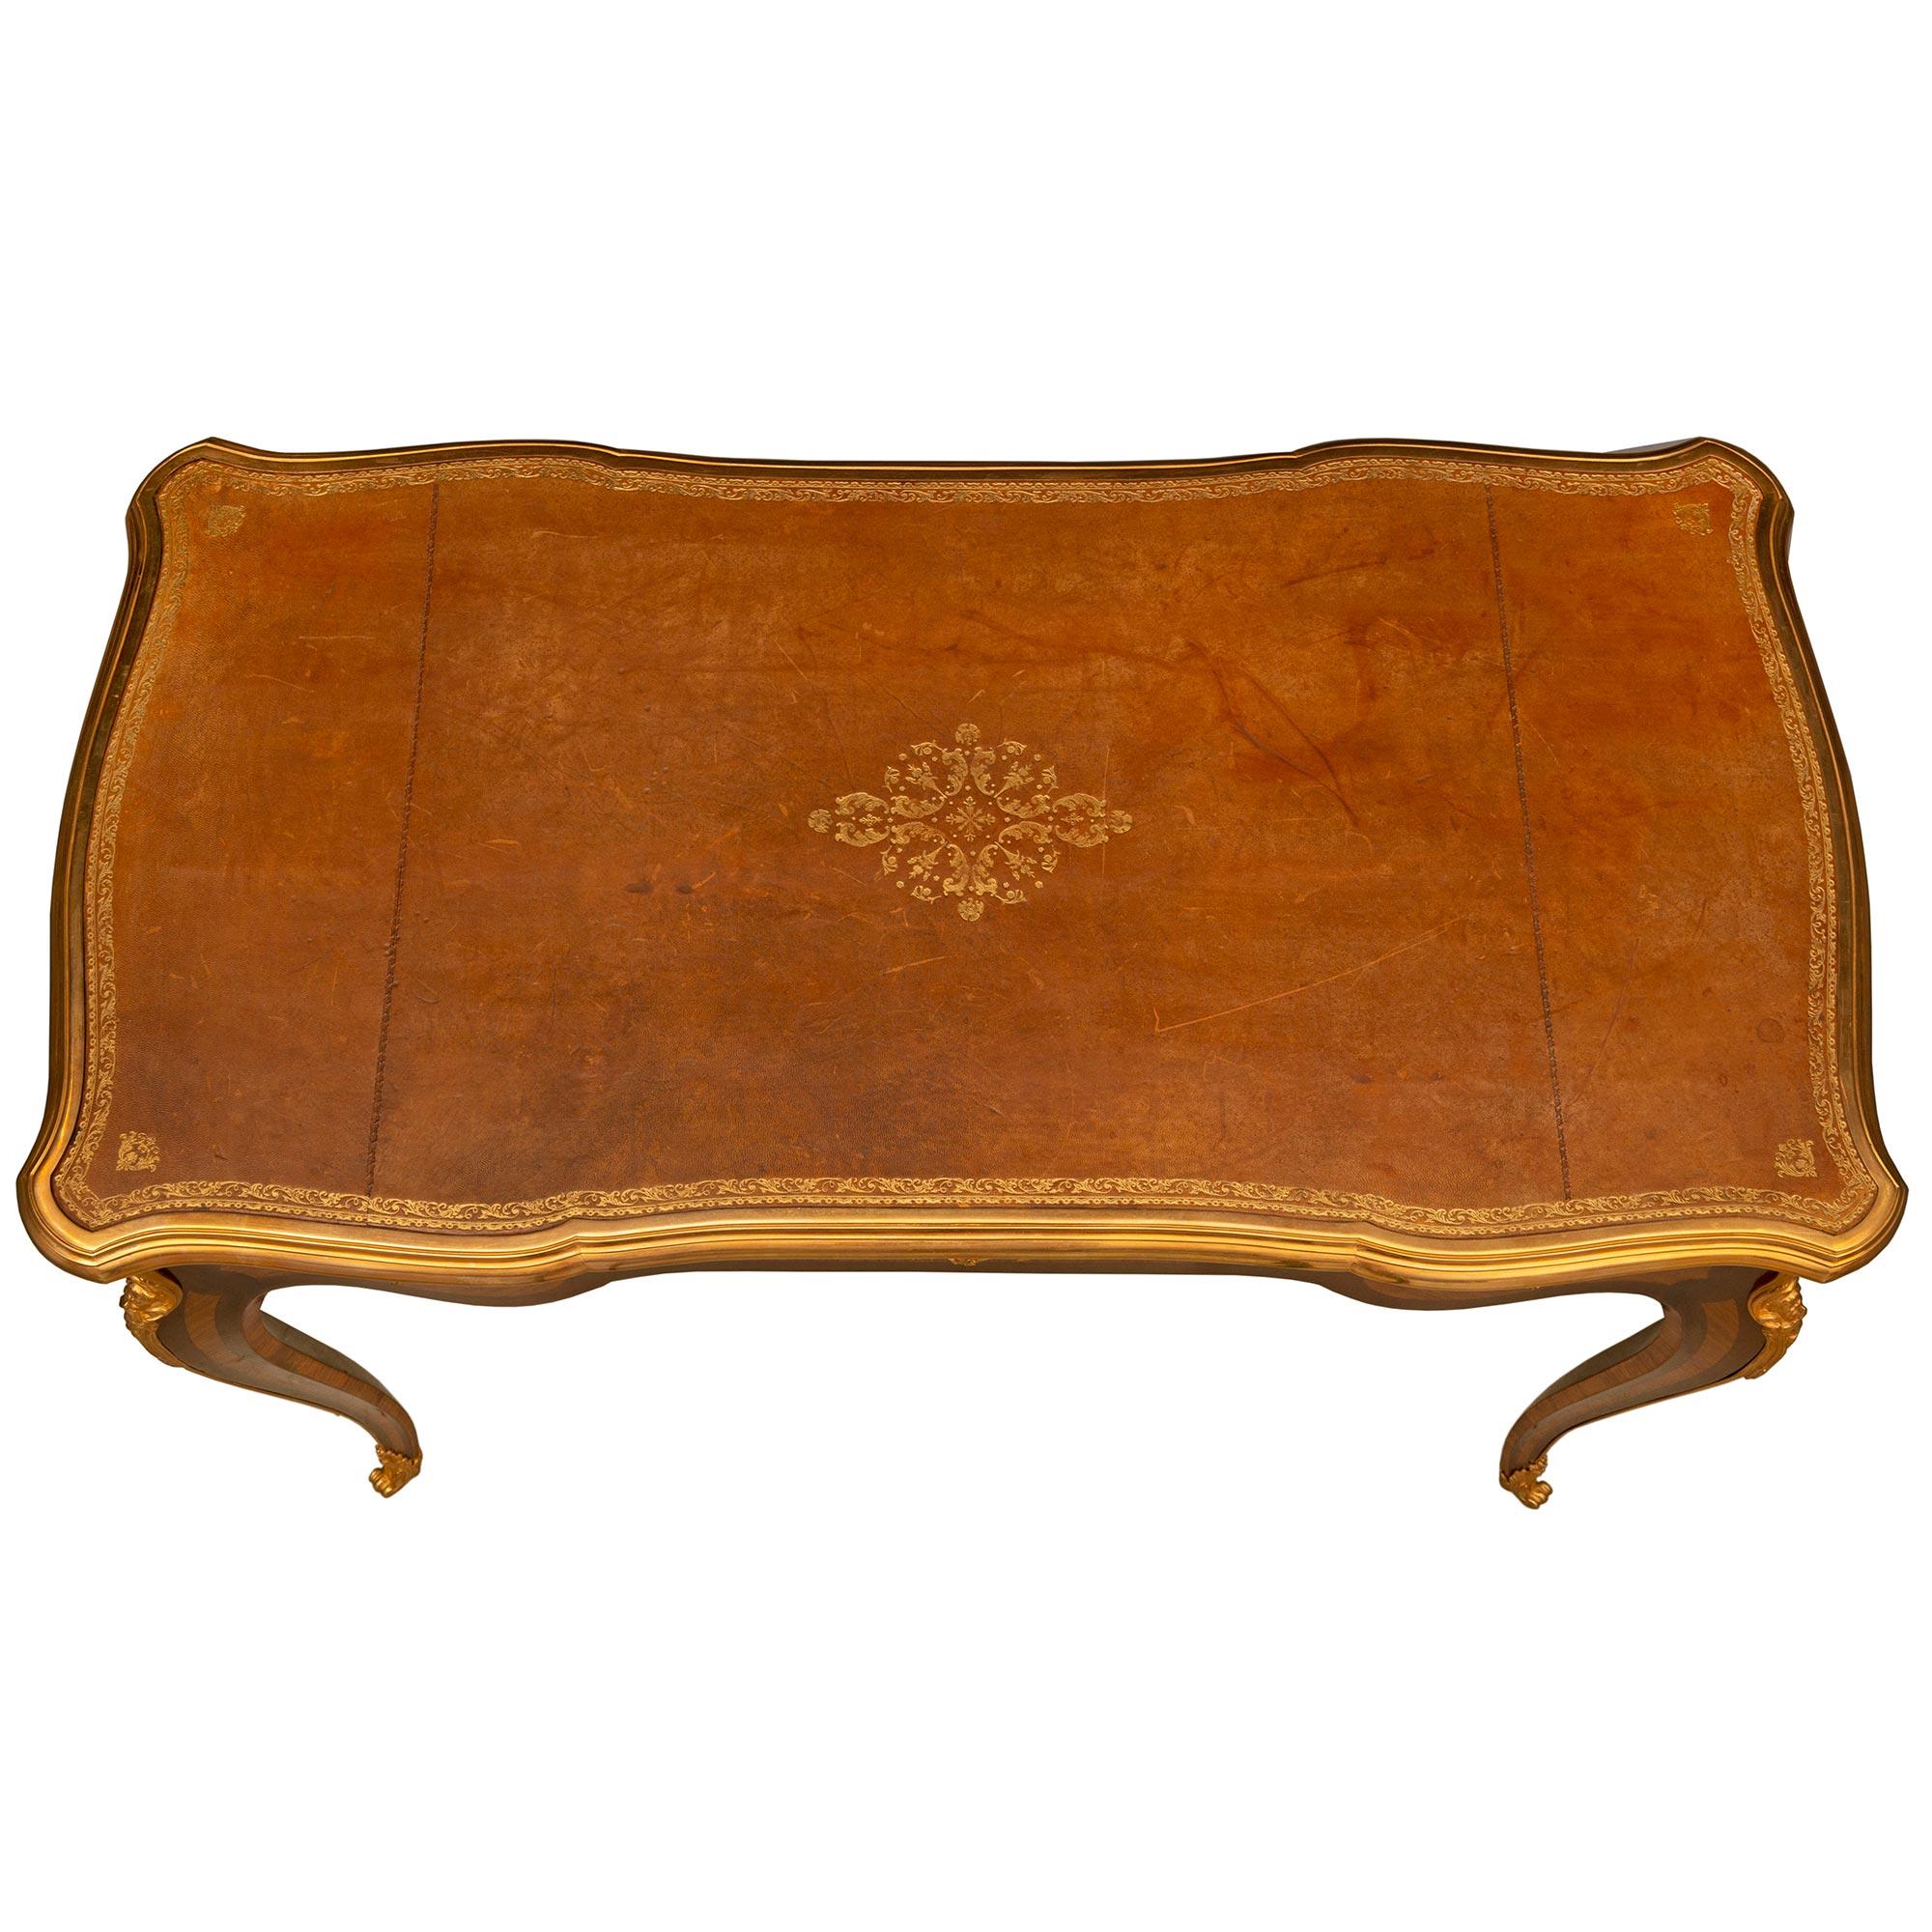 Ein eleganter französischer Damenschreibtisch aus Tulipwood und Kingwood des 19. Jahrhunderts. Der Schreibtisch steht auf vier schlanken Cabriole-Beinen mit feinen, umlaufenden Ormolu-Sabots, Intarsienschächten aus Königsholz und Tulipholz und